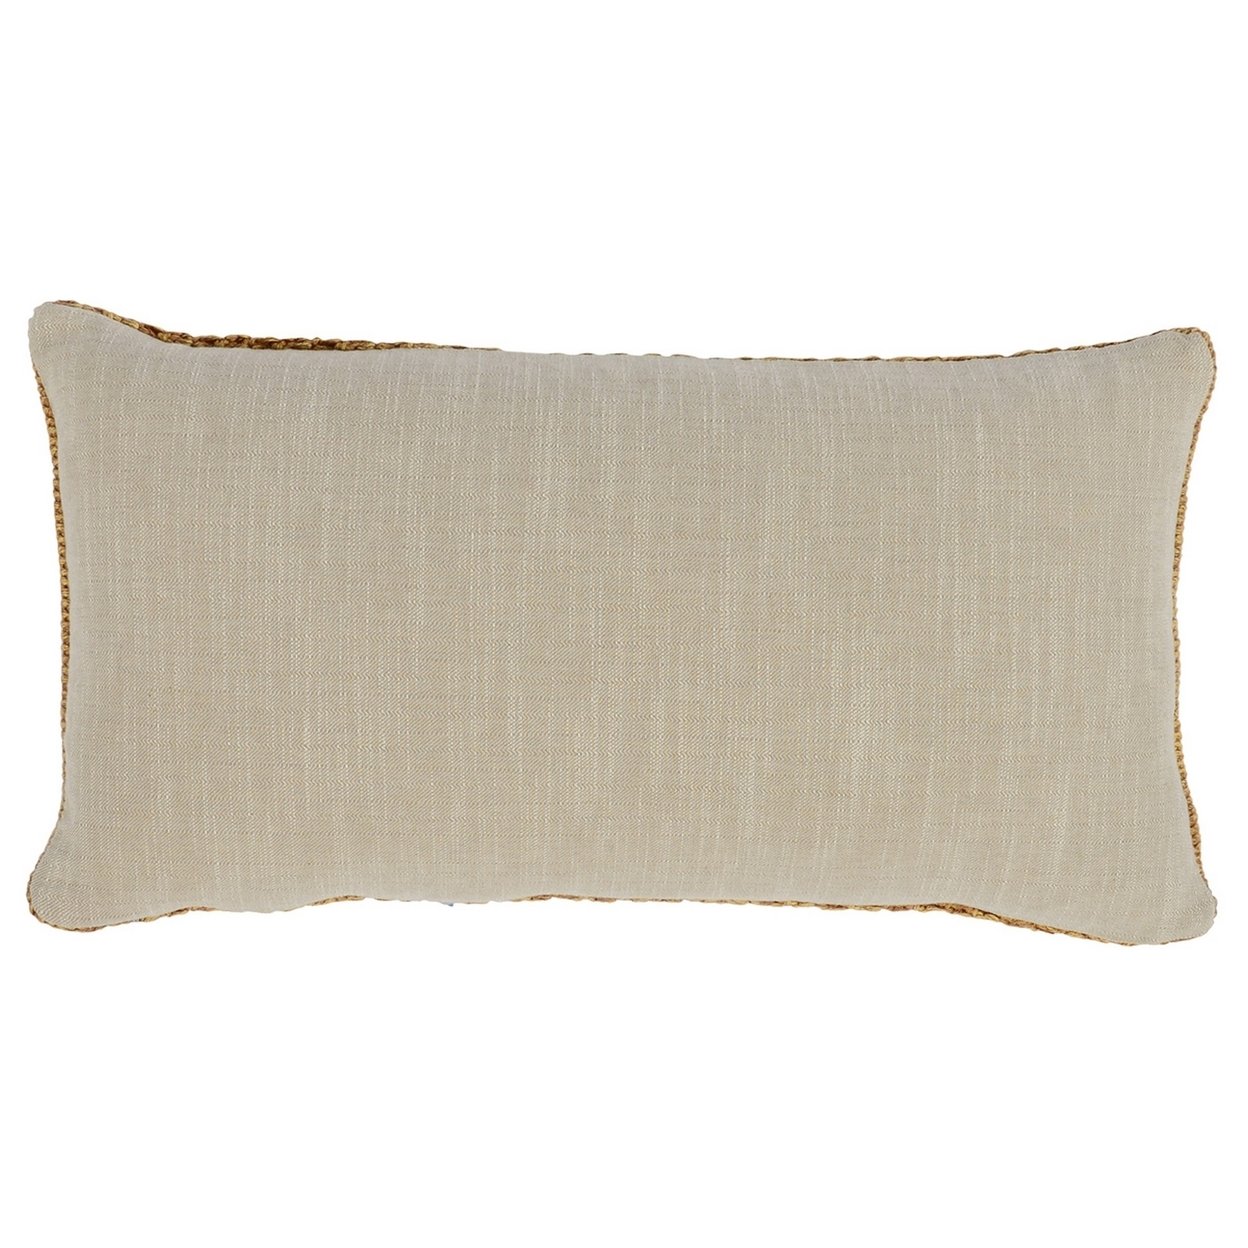 Rosie 14 X 26 Lumbar Accent Throw Pillow, Hand Knitted Designs, Brown Linen- Saltoro Sherpi